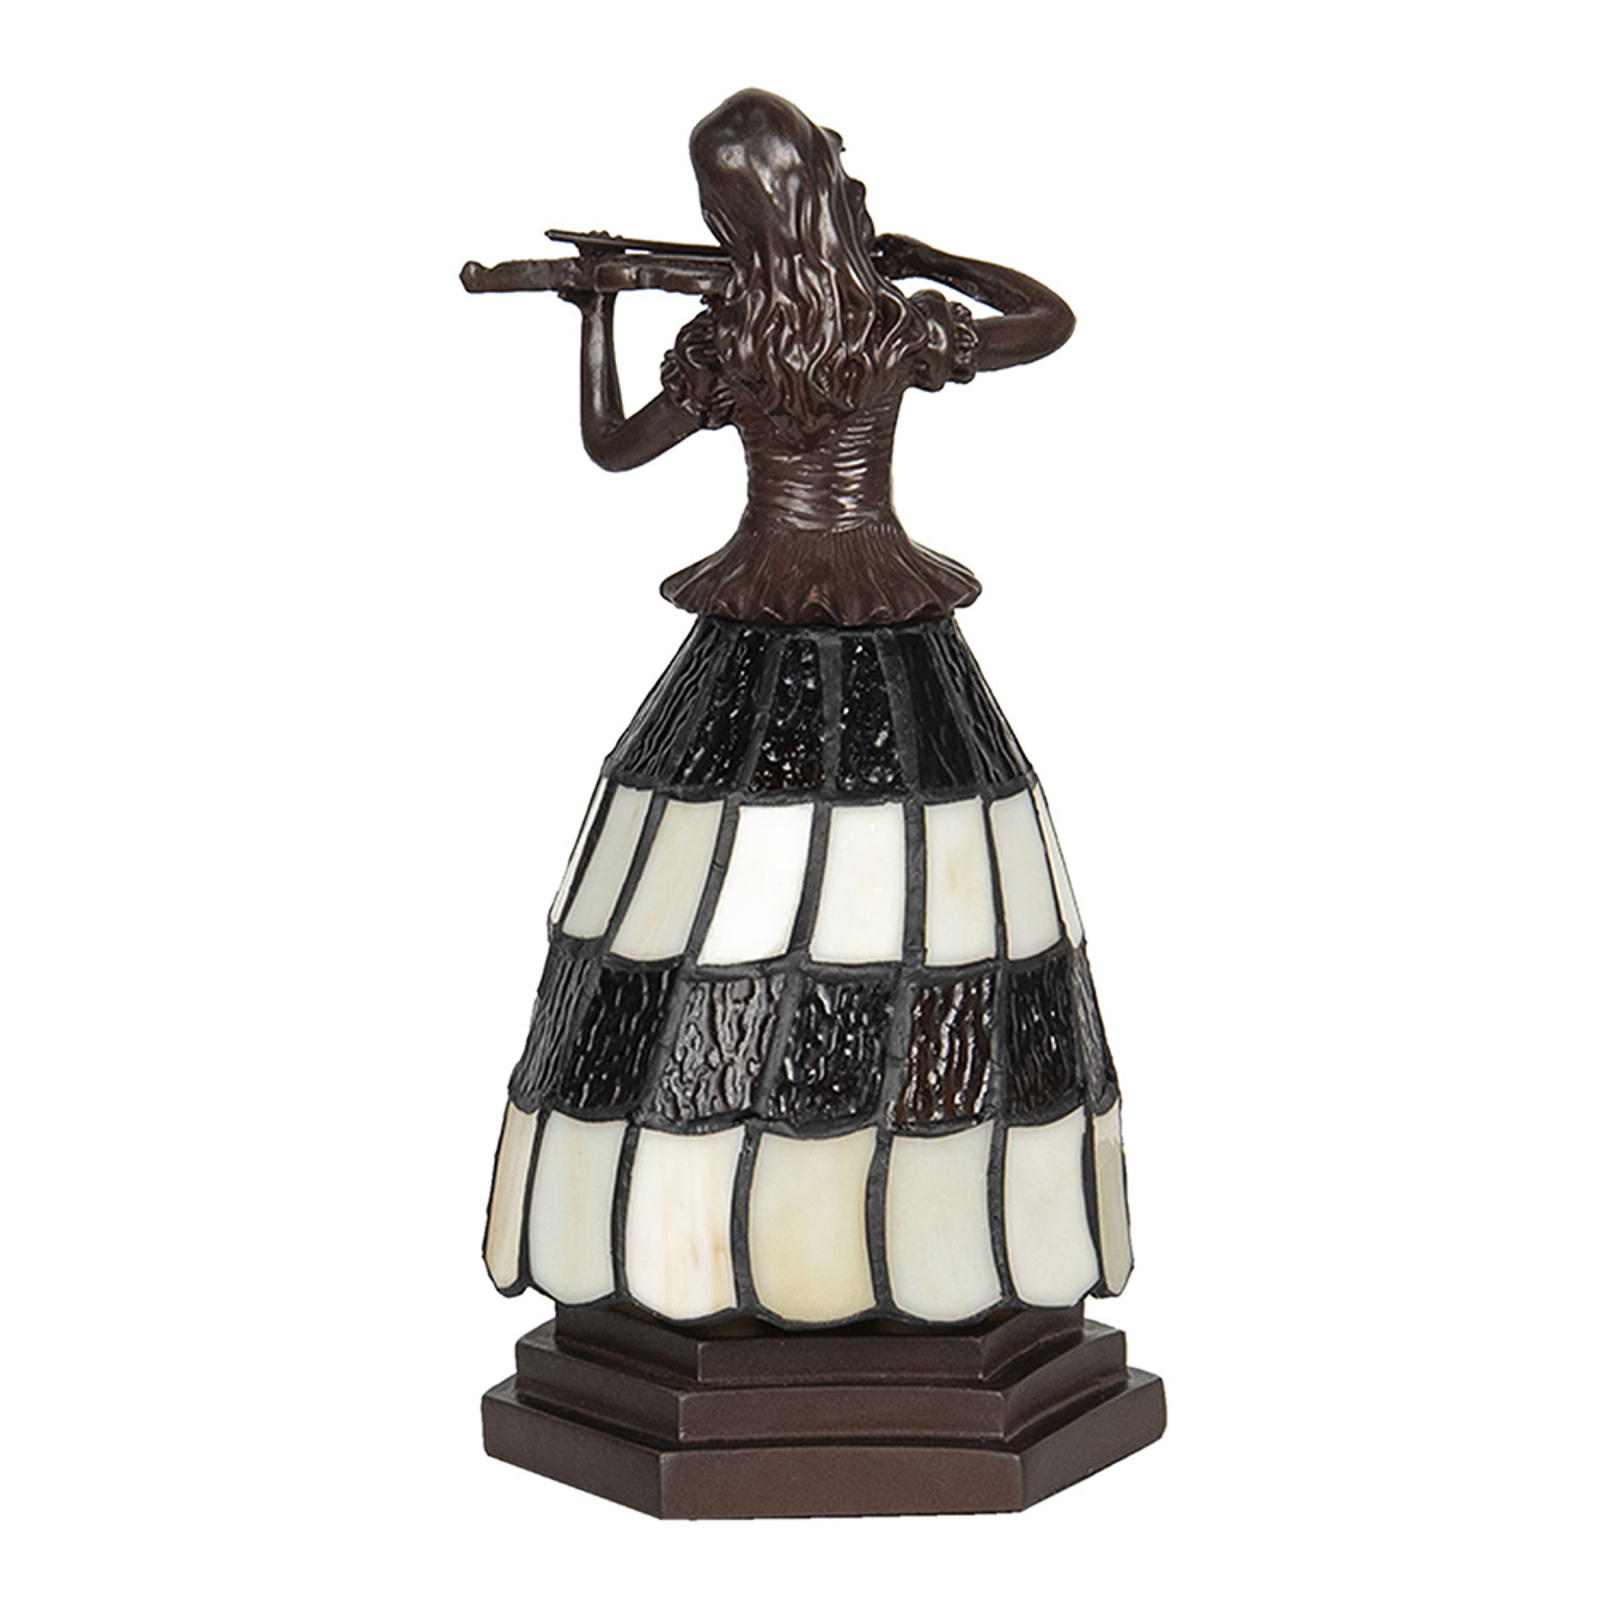 Stolní lampa 5LL-6047 žena, styl Tiffany hnědobílá